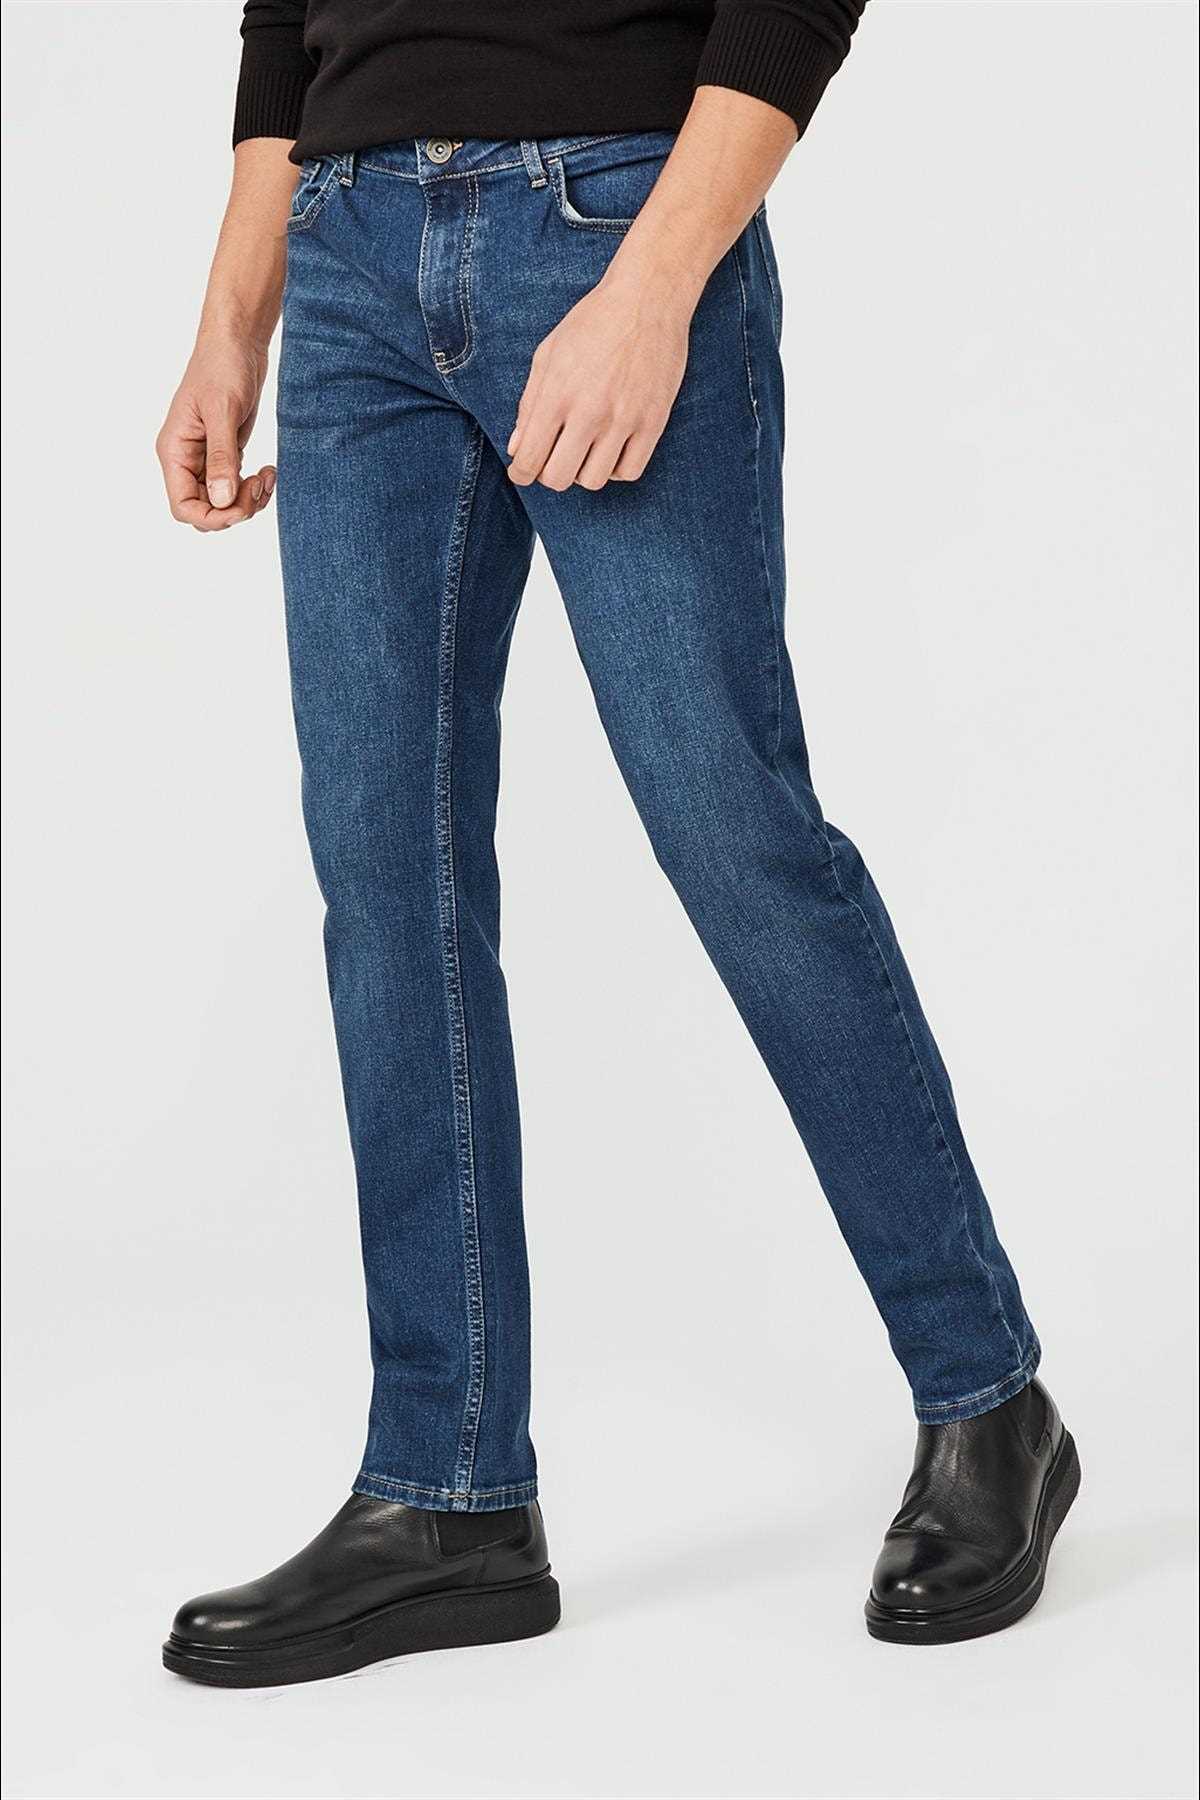 خرید ارزان شلوار جین فانتزی مردانه برند آوا رنگ آبی کد ty52327743